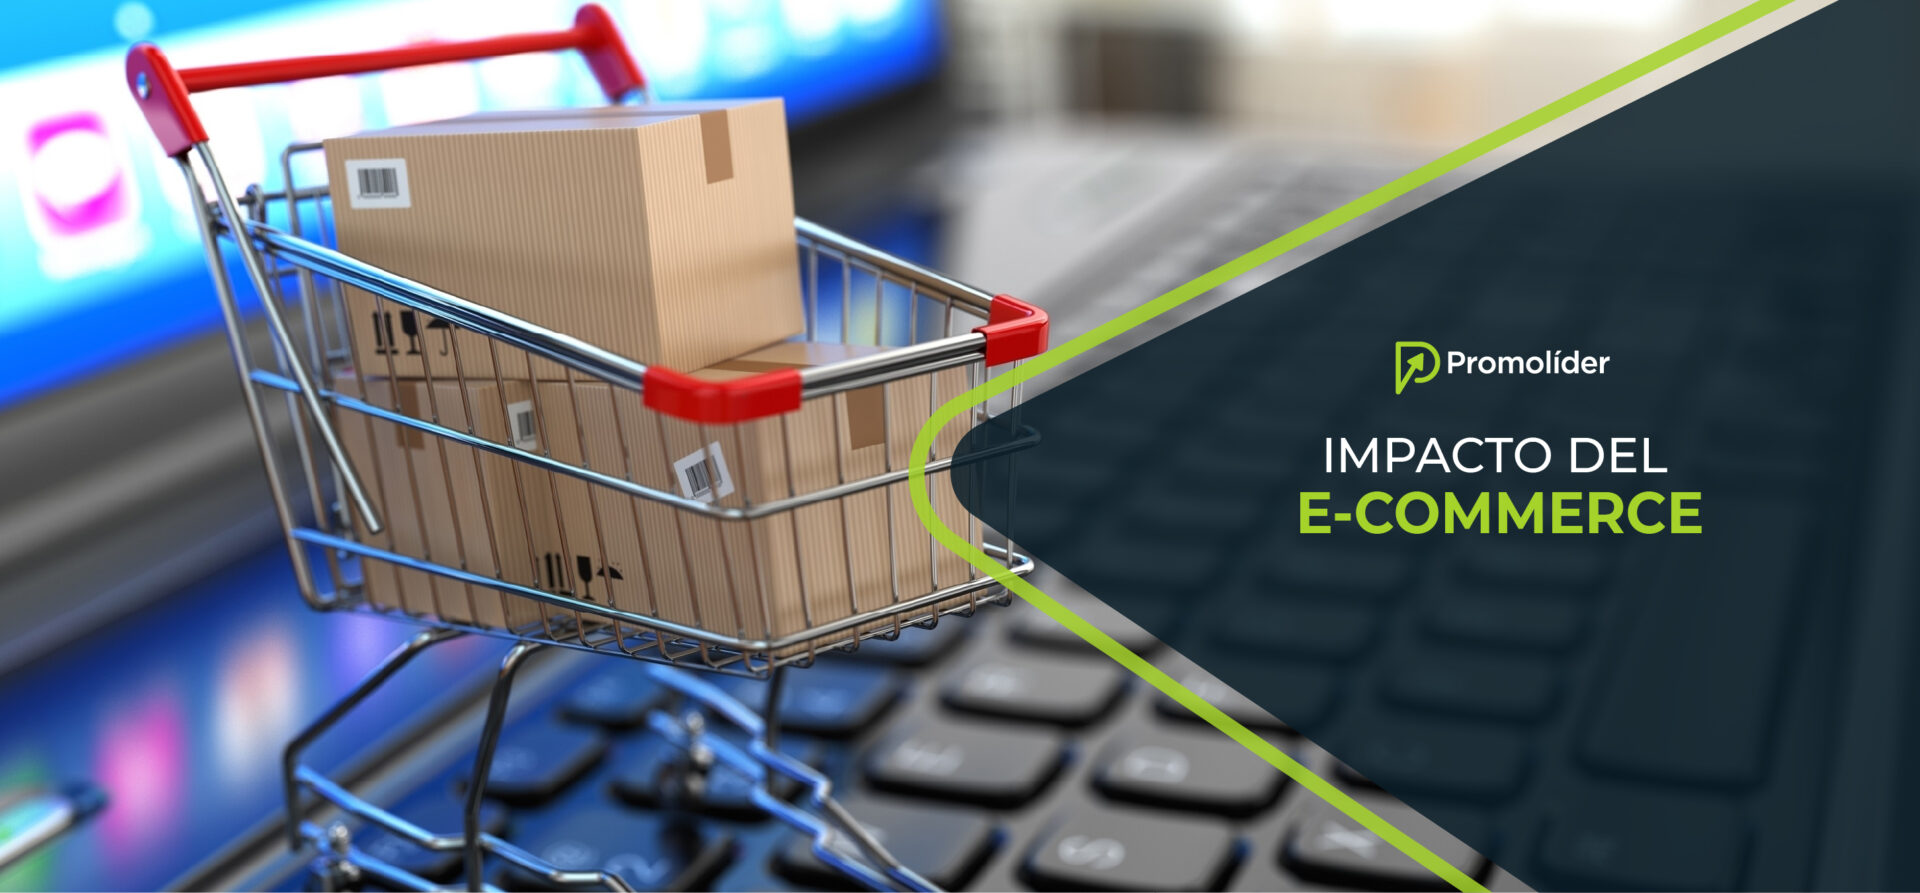 Impacto del e-commerce